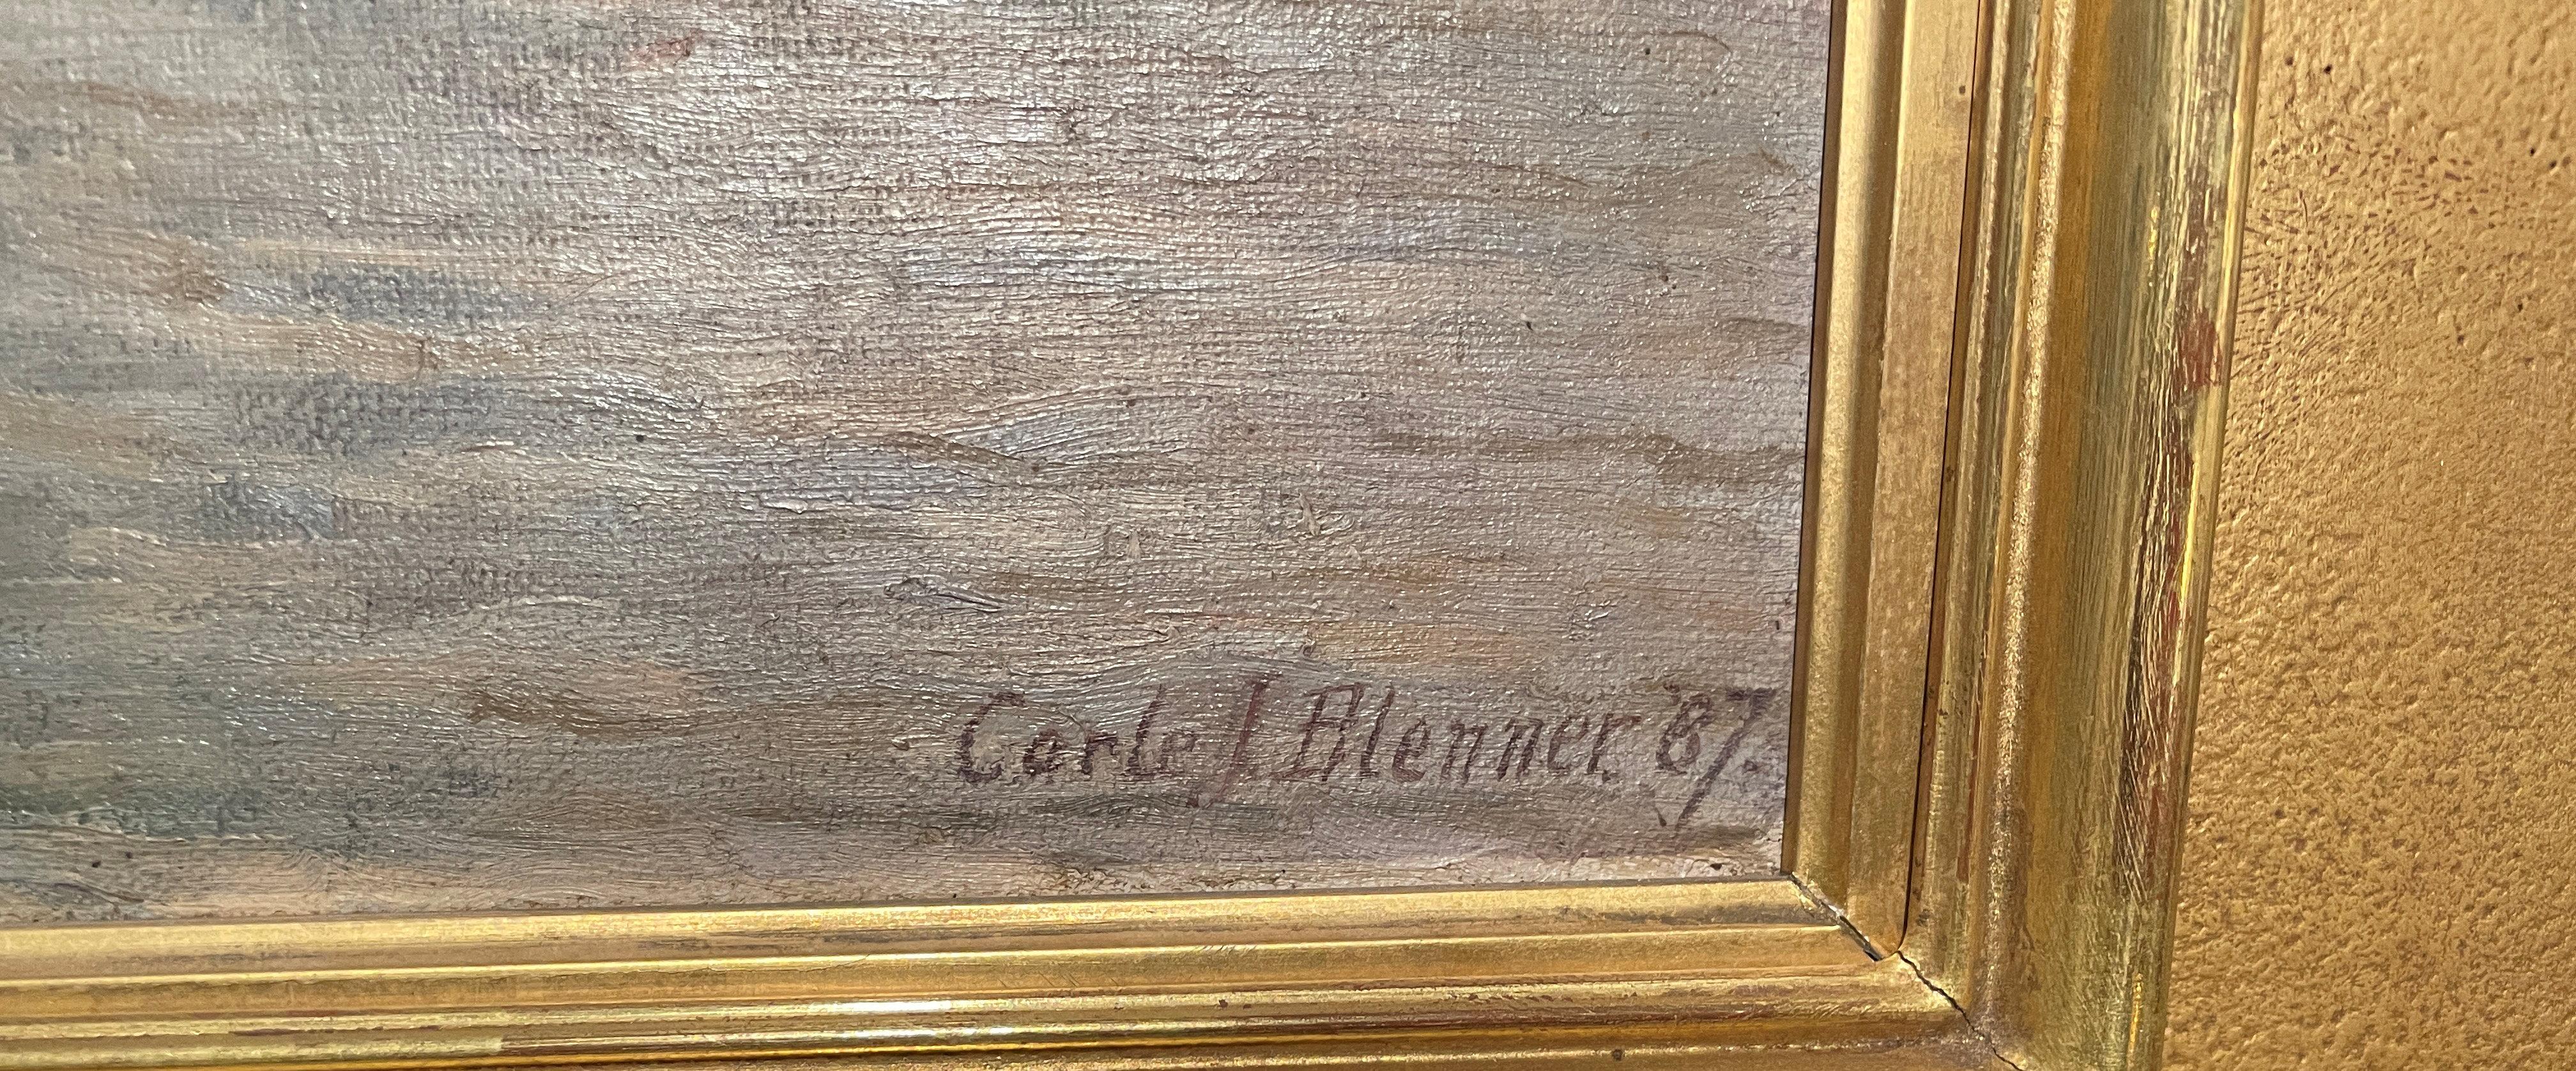 Carle John Blenner (1862 - 1952)
Pont Neuf, Seine, Paris, France, 1887
Huile sur toile
15 x 22 pouces
Signé et daté en bas à droite ; titré en bas à gauche

Carle J. Blenner est né à Richmond, en Virginie, en 1864.  Il a fait ses études à Marbourg,